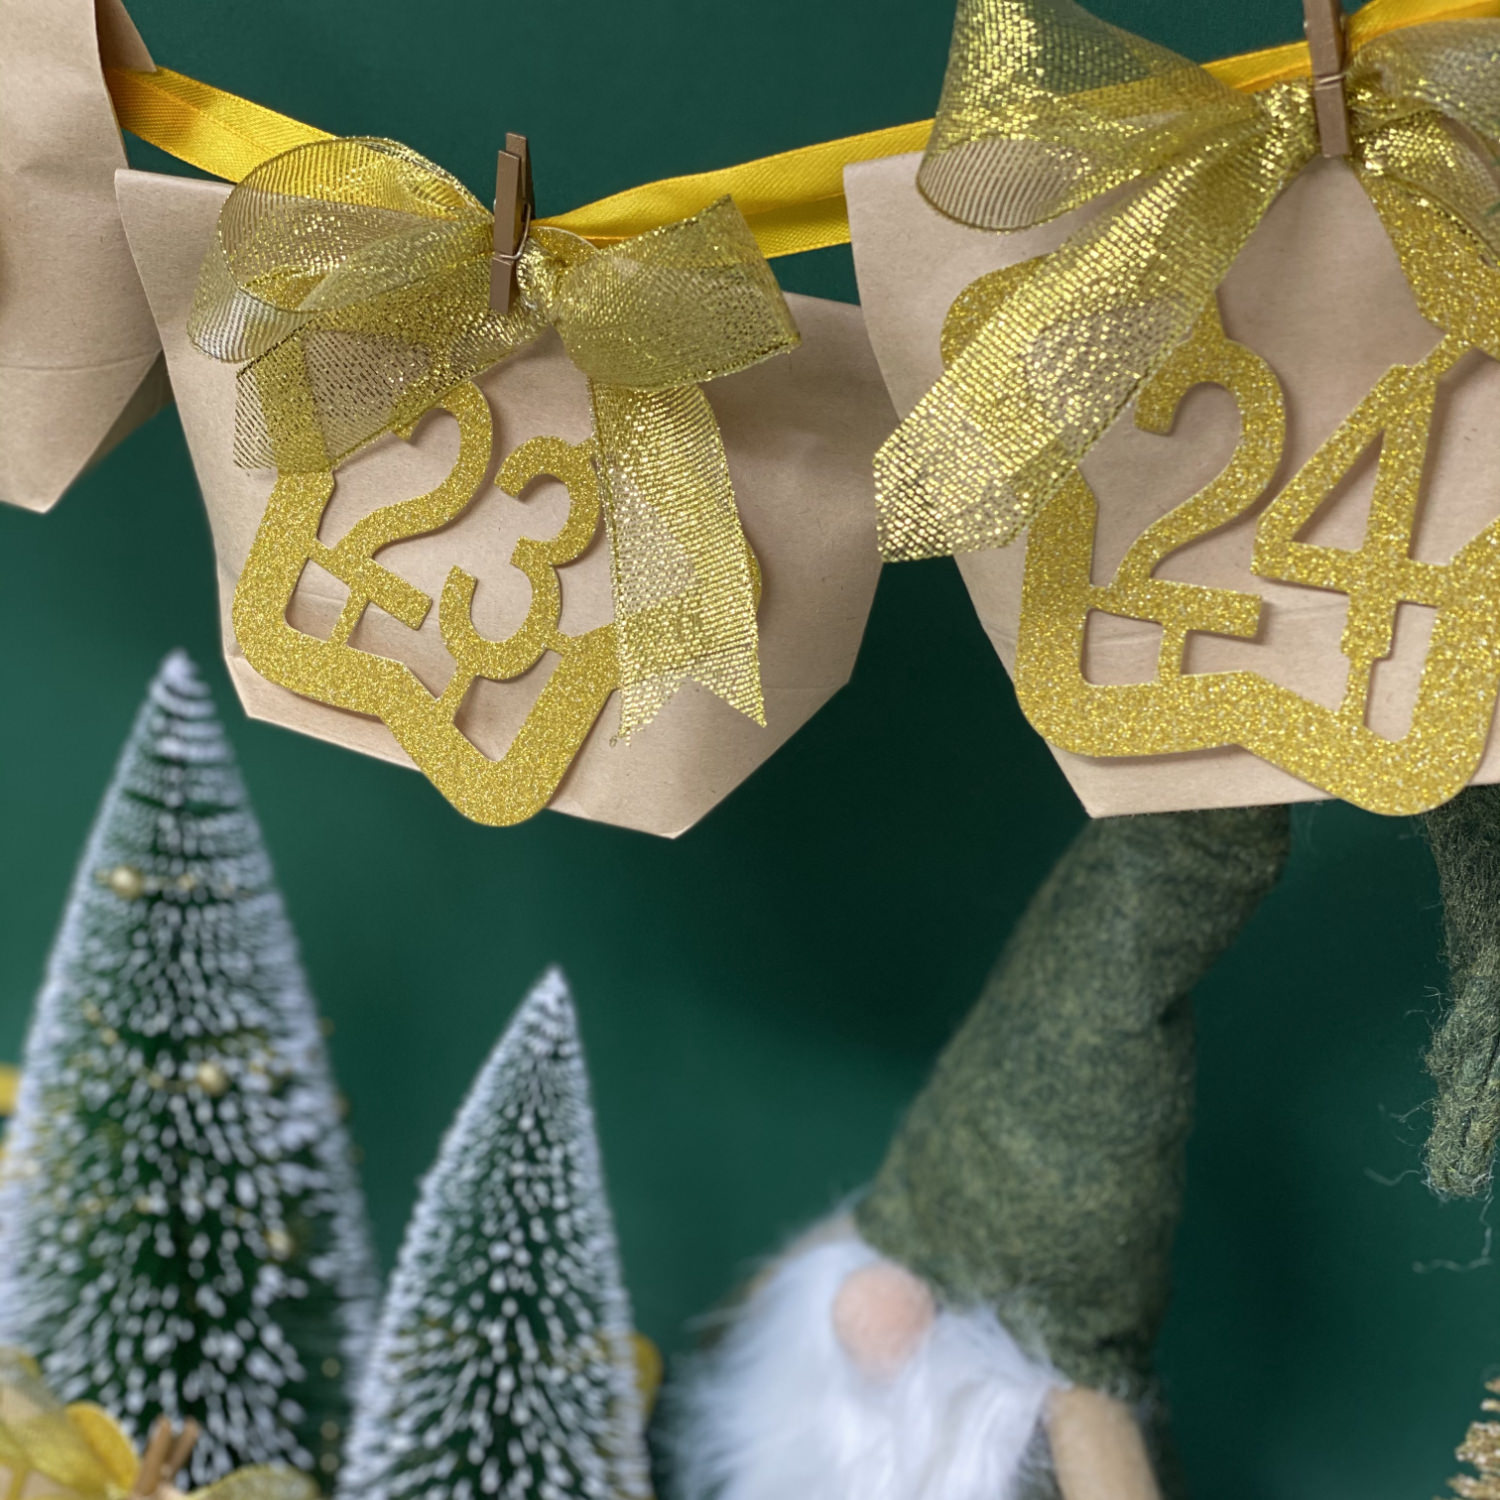 24 Zahlen Anhänger 1-24 mit Schnur und Glitzereffekt für DIY Adventskalender  Weihnachten Deko gold